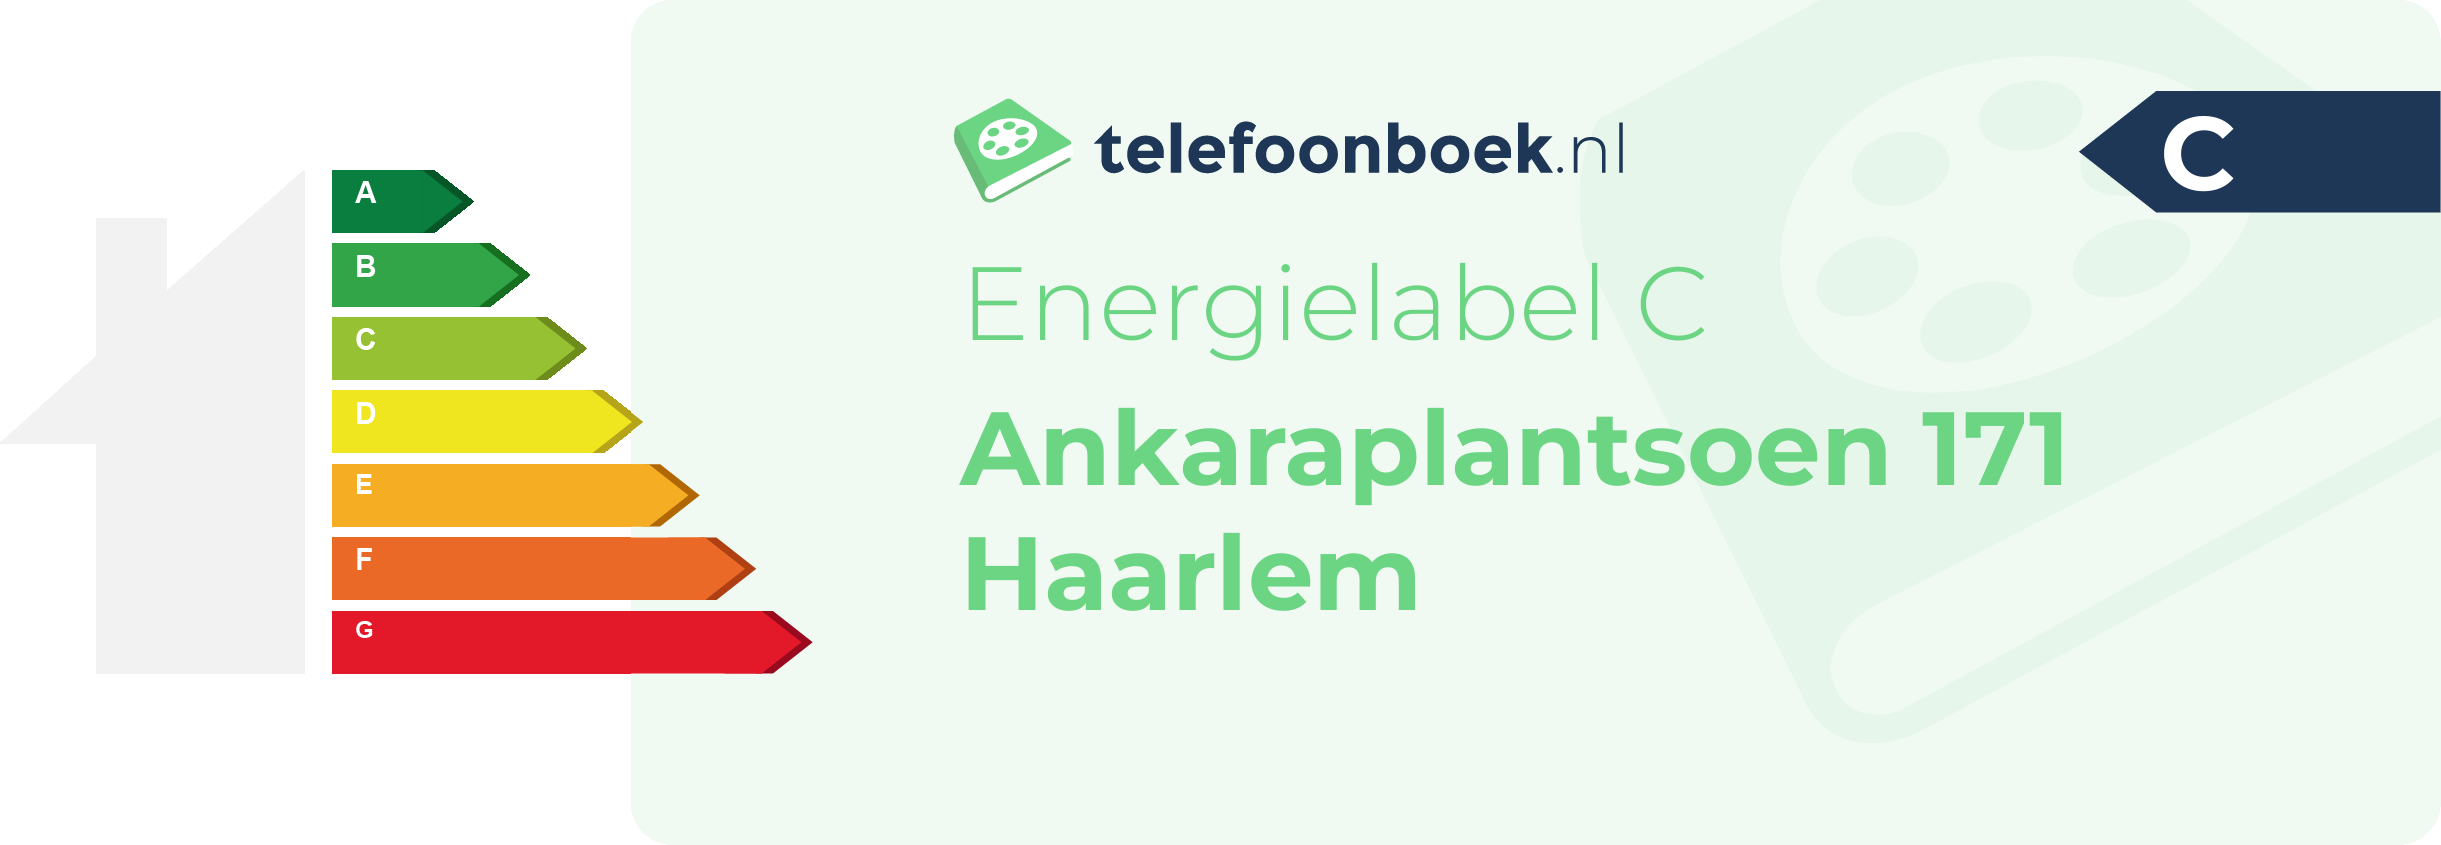 Energielabel Ankaraplantsoen 171 Haarlem